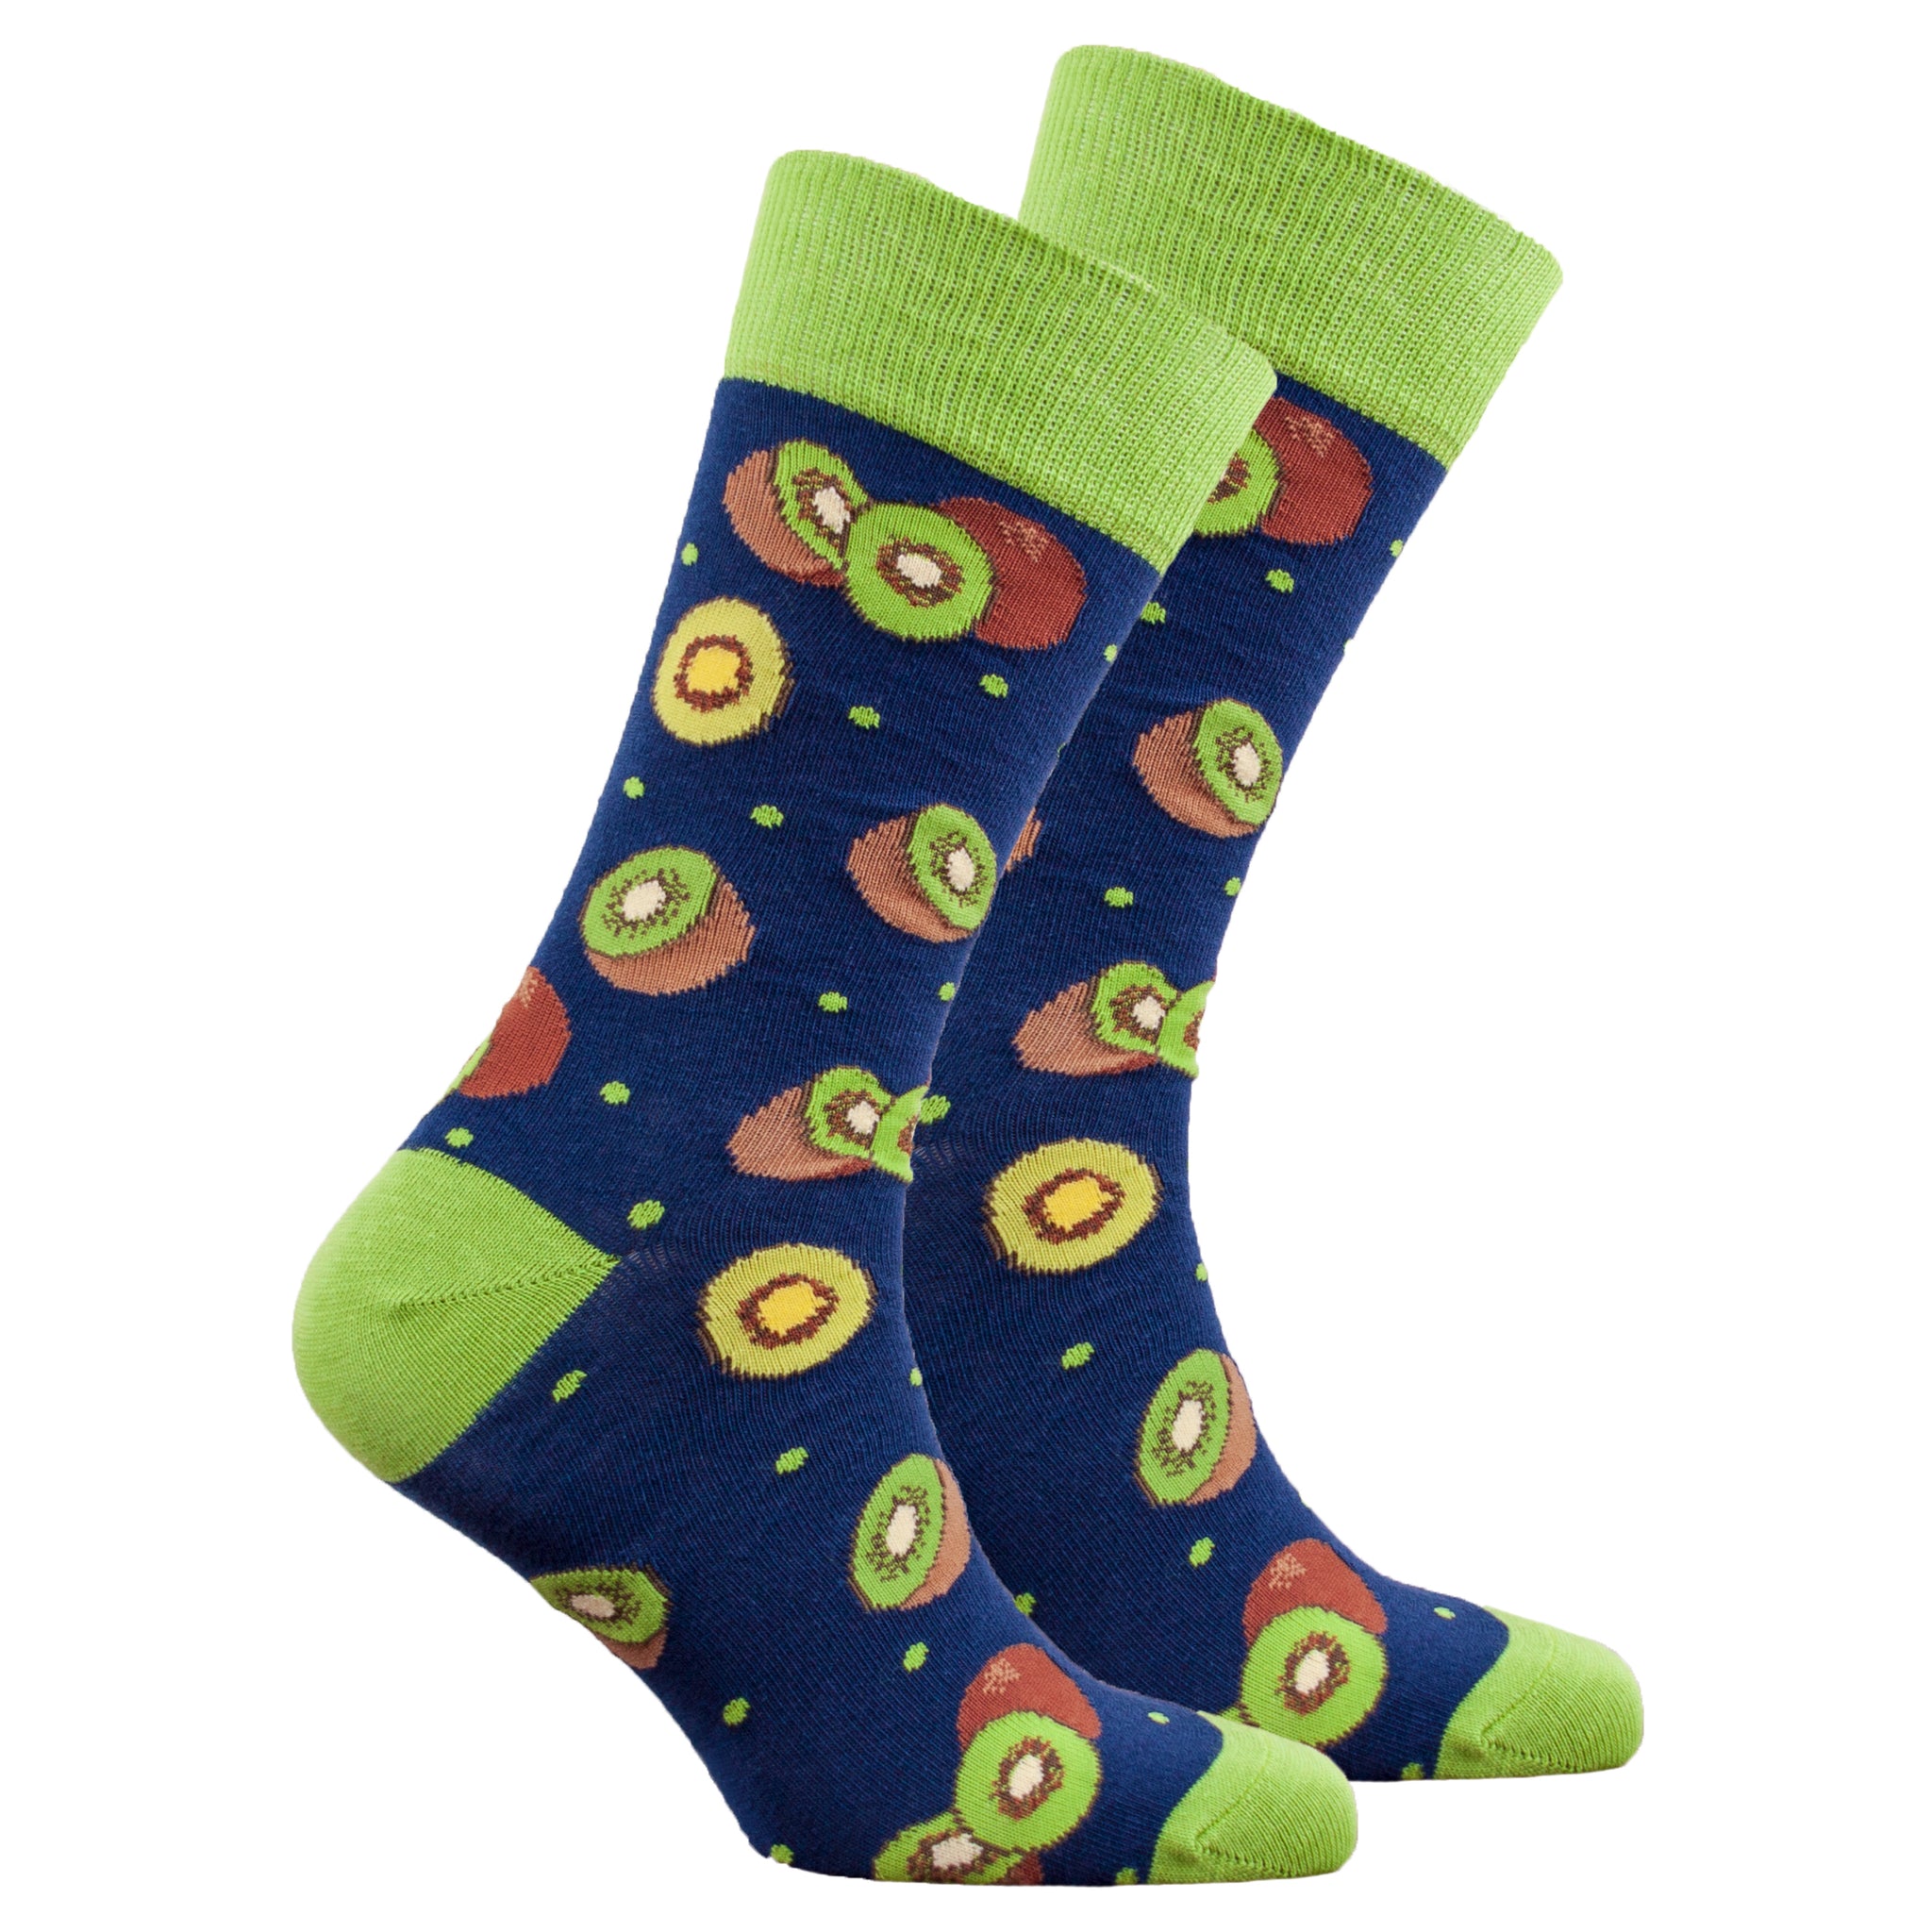 Men's Kiwi Socks - Socks n Socks